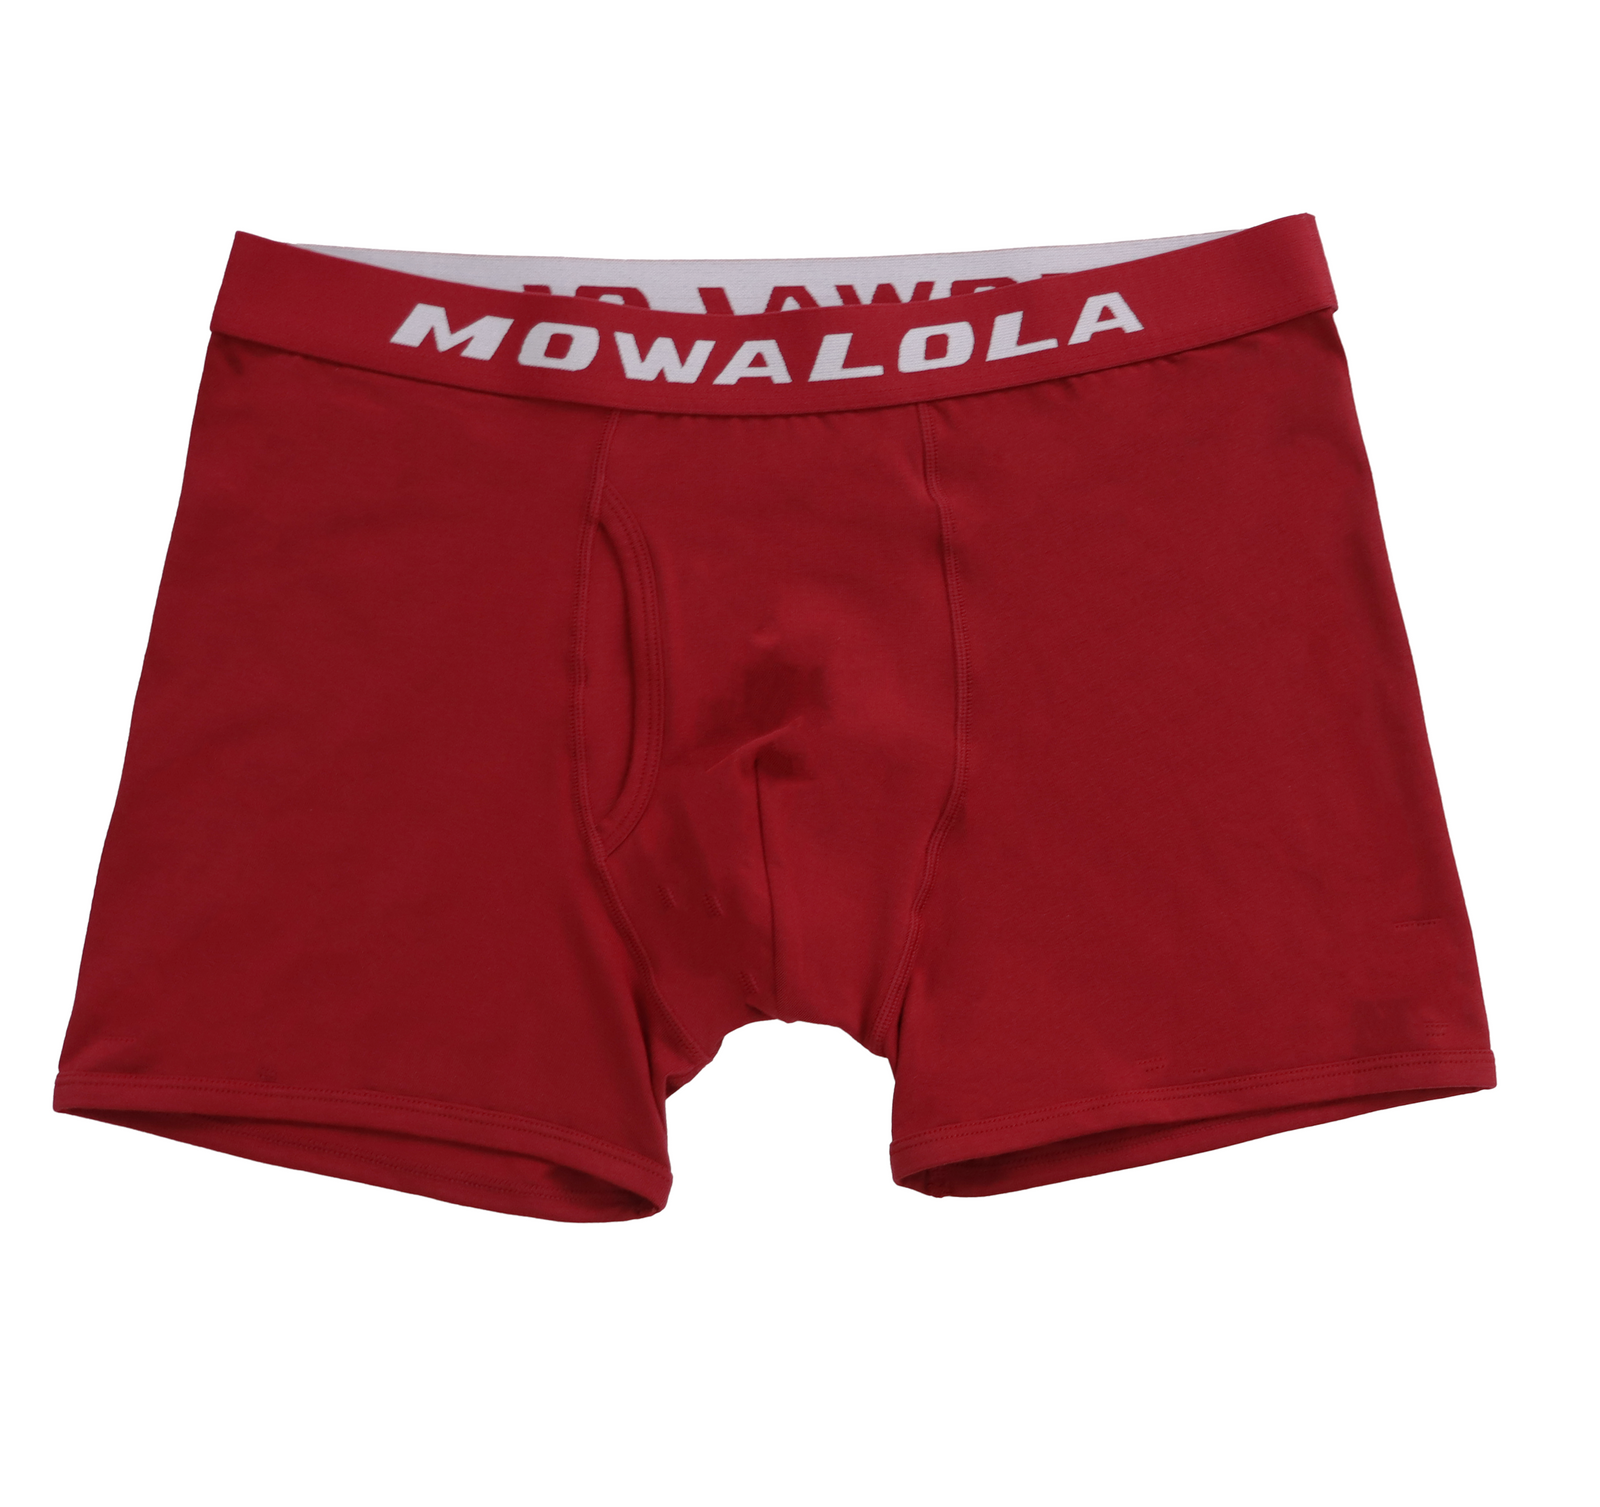 Mowalola Boxer Briefs